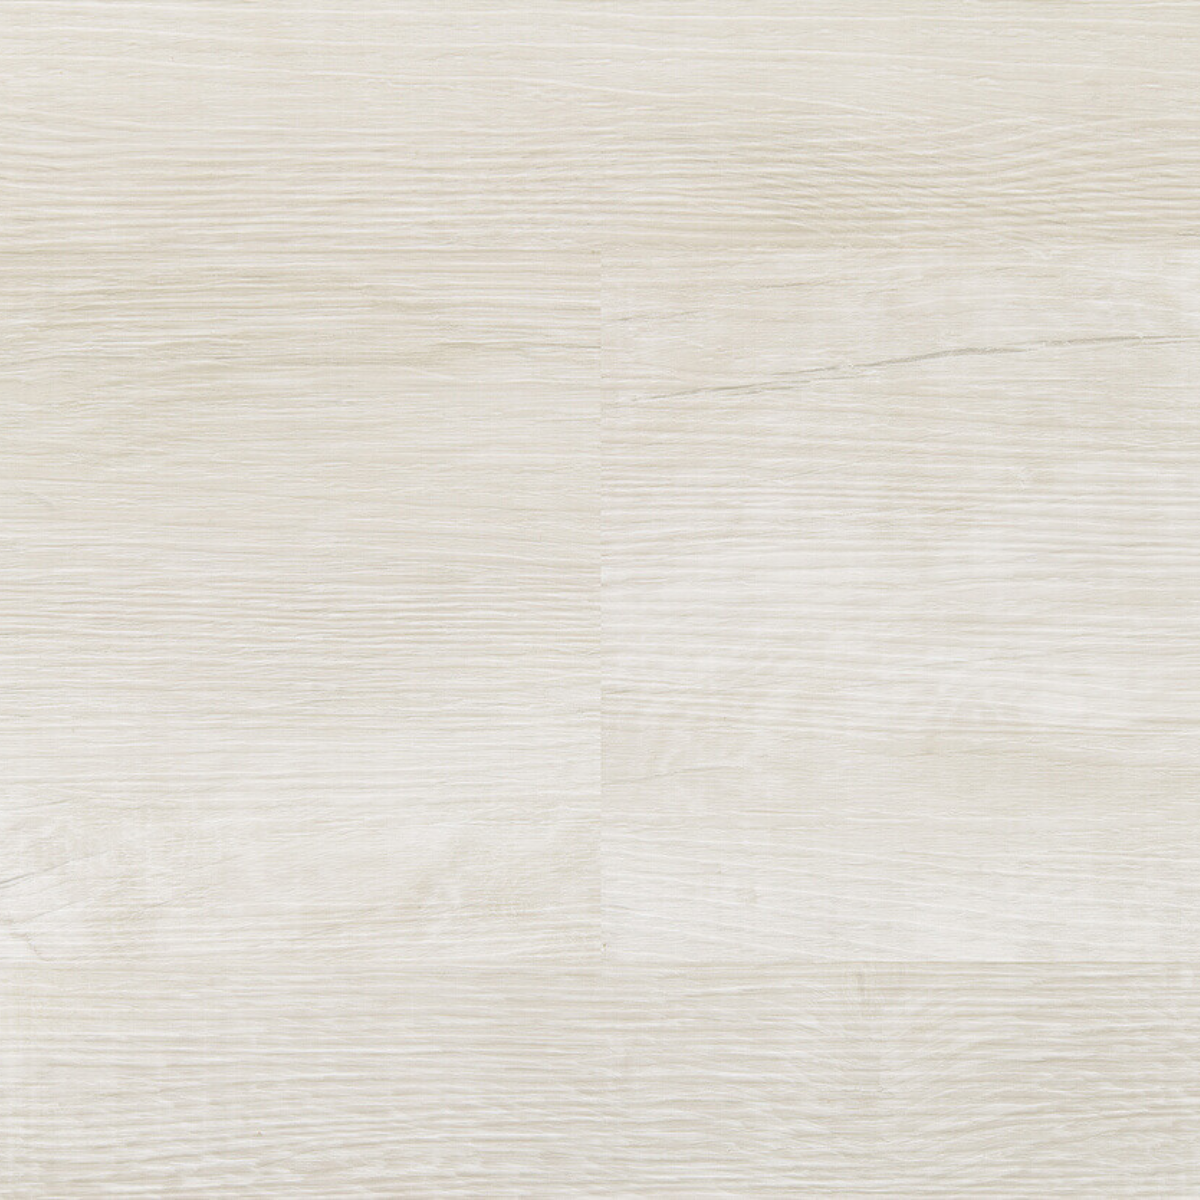 Polymerní podlaha plovoucí Premier Wood Kompozit Algarve